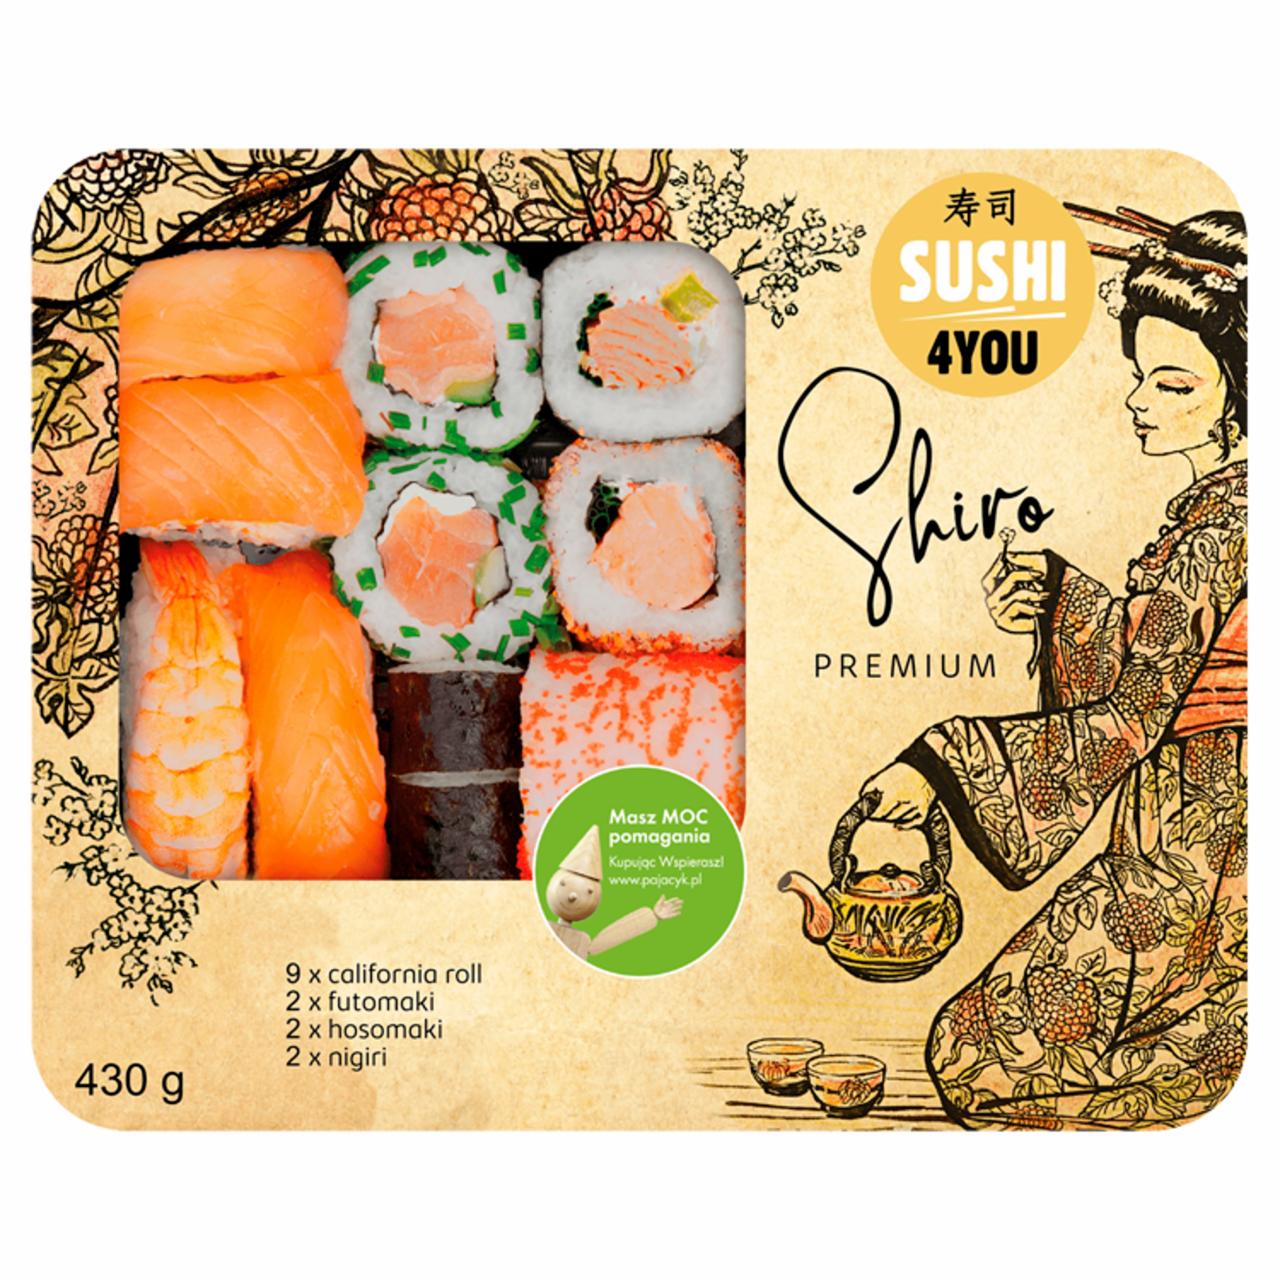 Zdjęcia - Premium Sushi Shiro 430 g Sushi4You